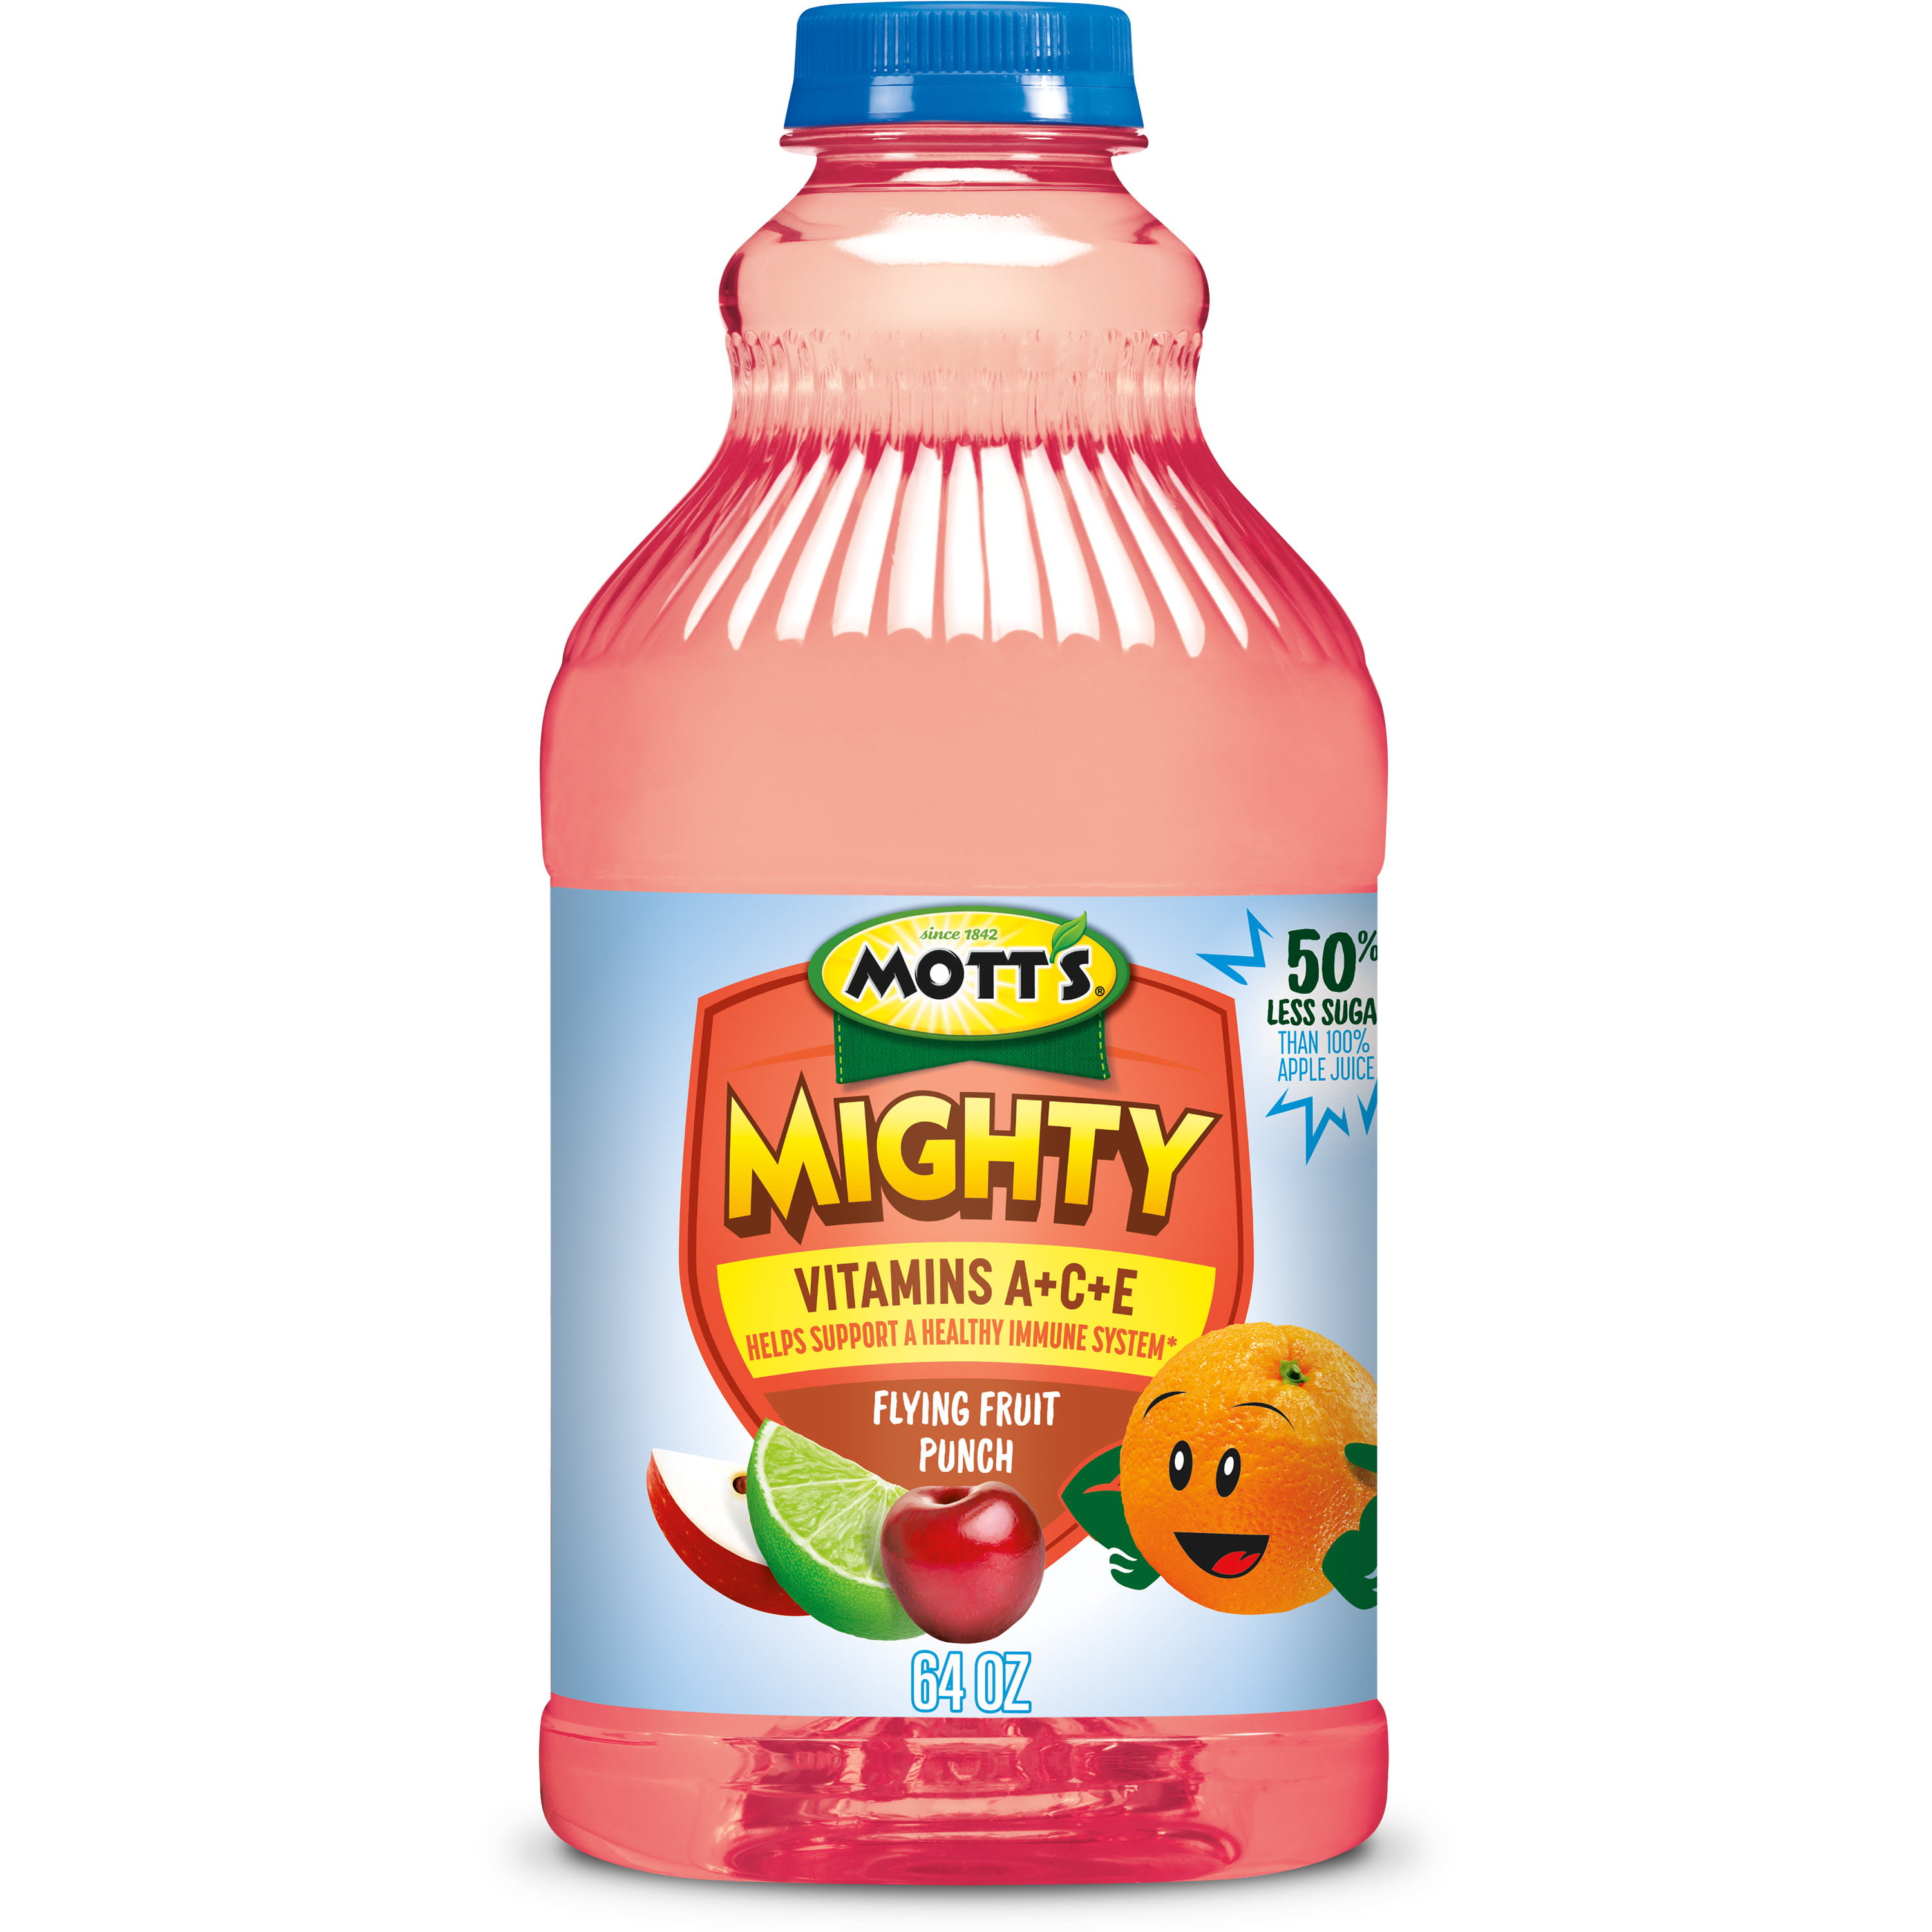 Mott's 100% Juice Original Apple Juice, 64 Fluid Ounce, Bottle 